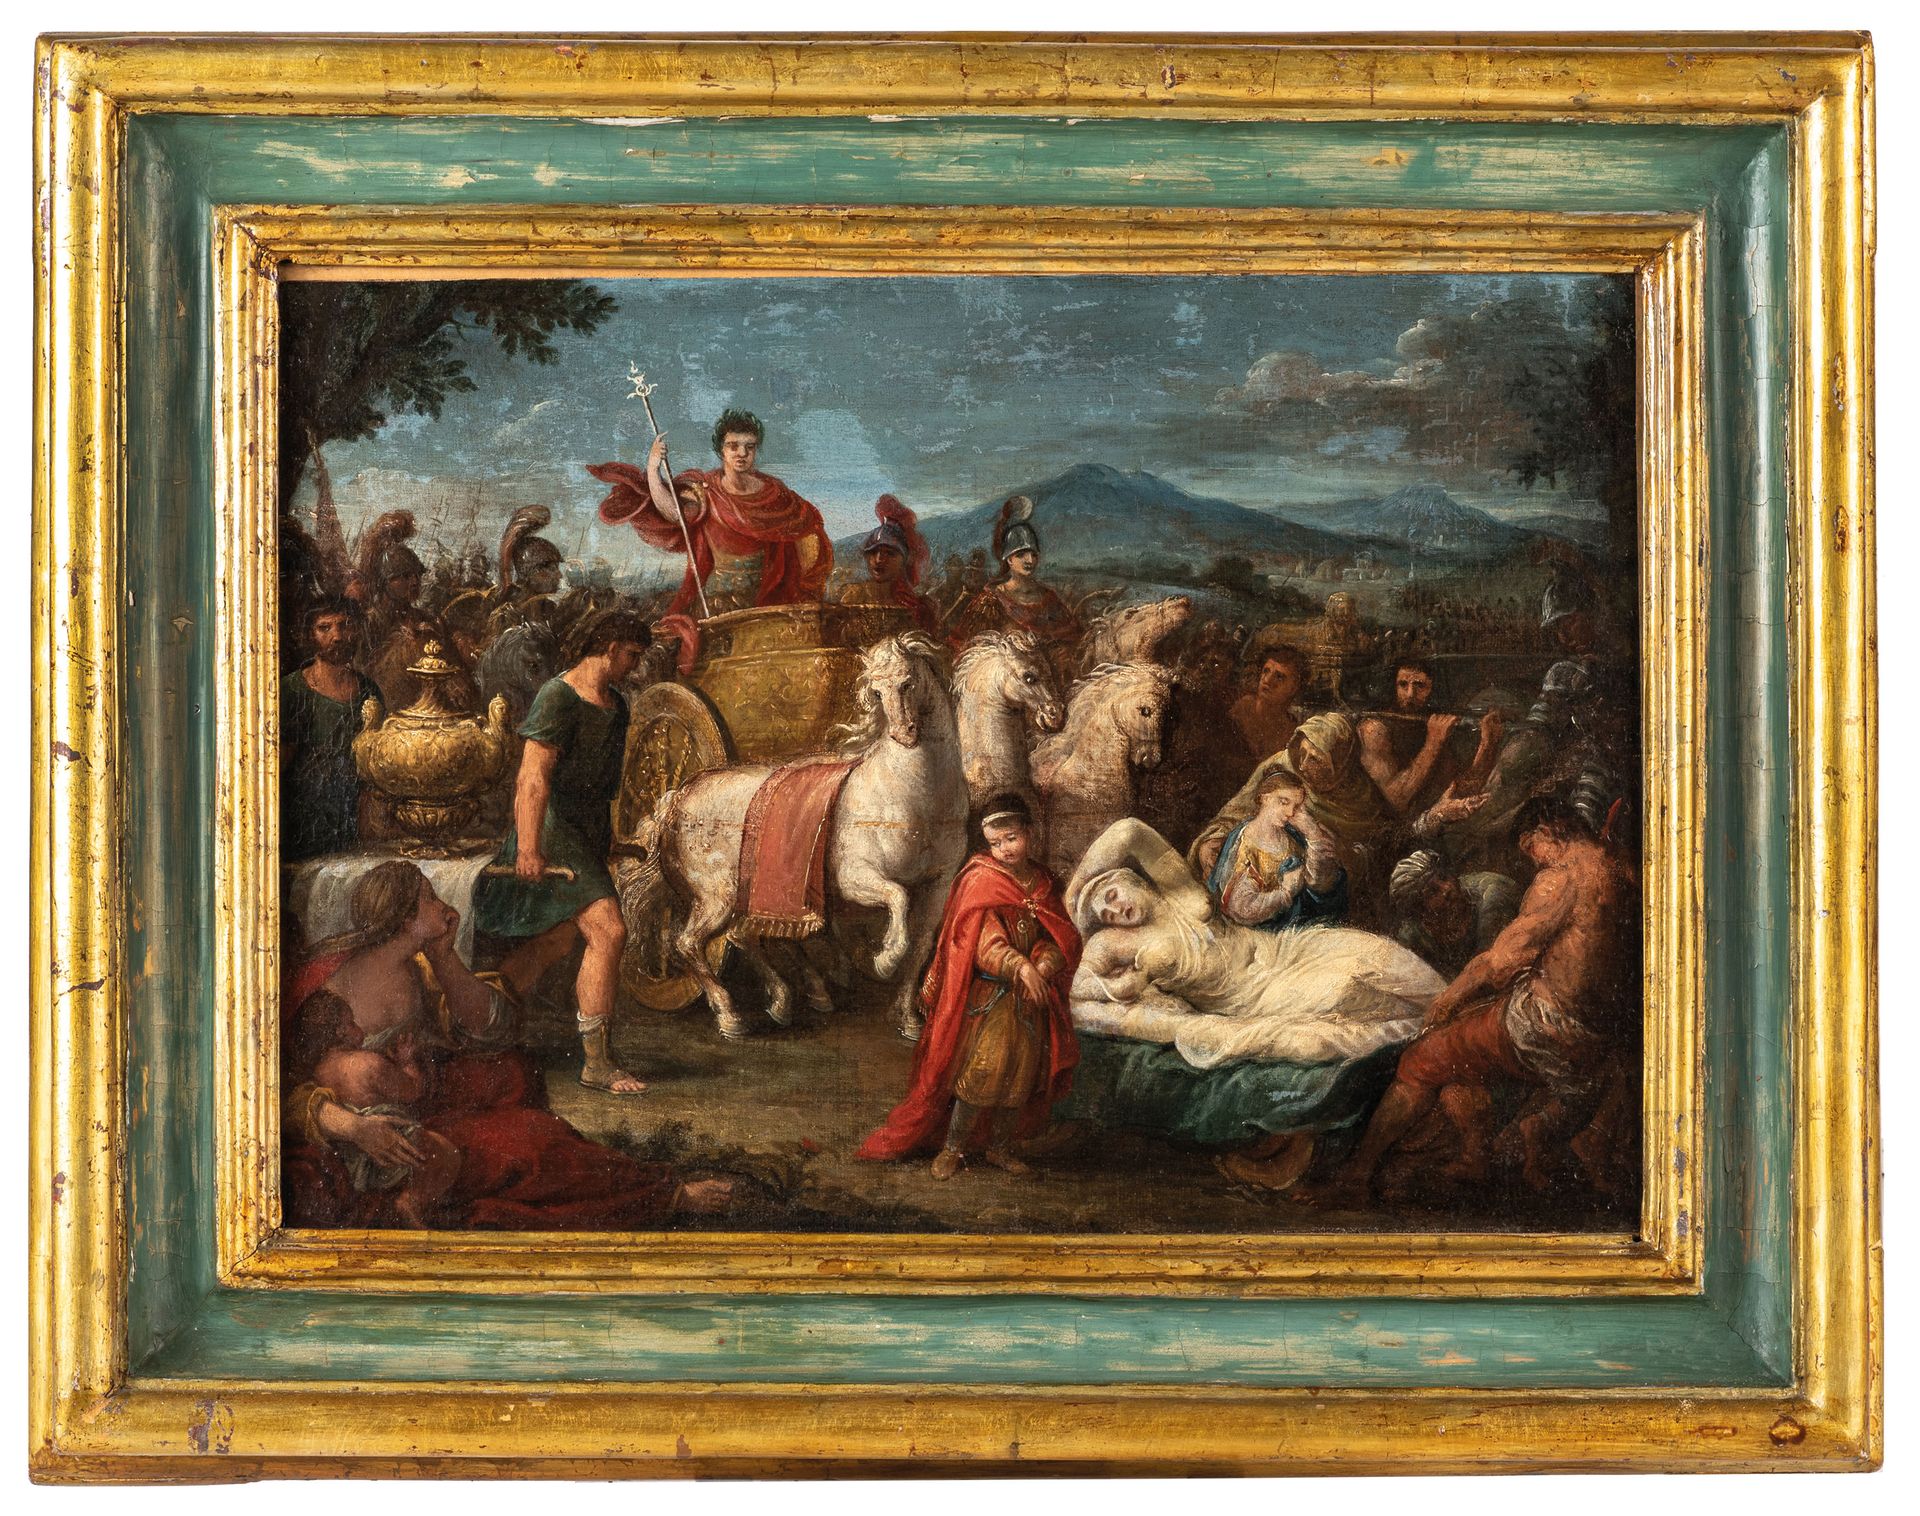 PITTORE DEL XVIII SECOLO Roman Triumph
Oil on canvas, cm 45,5X64,5